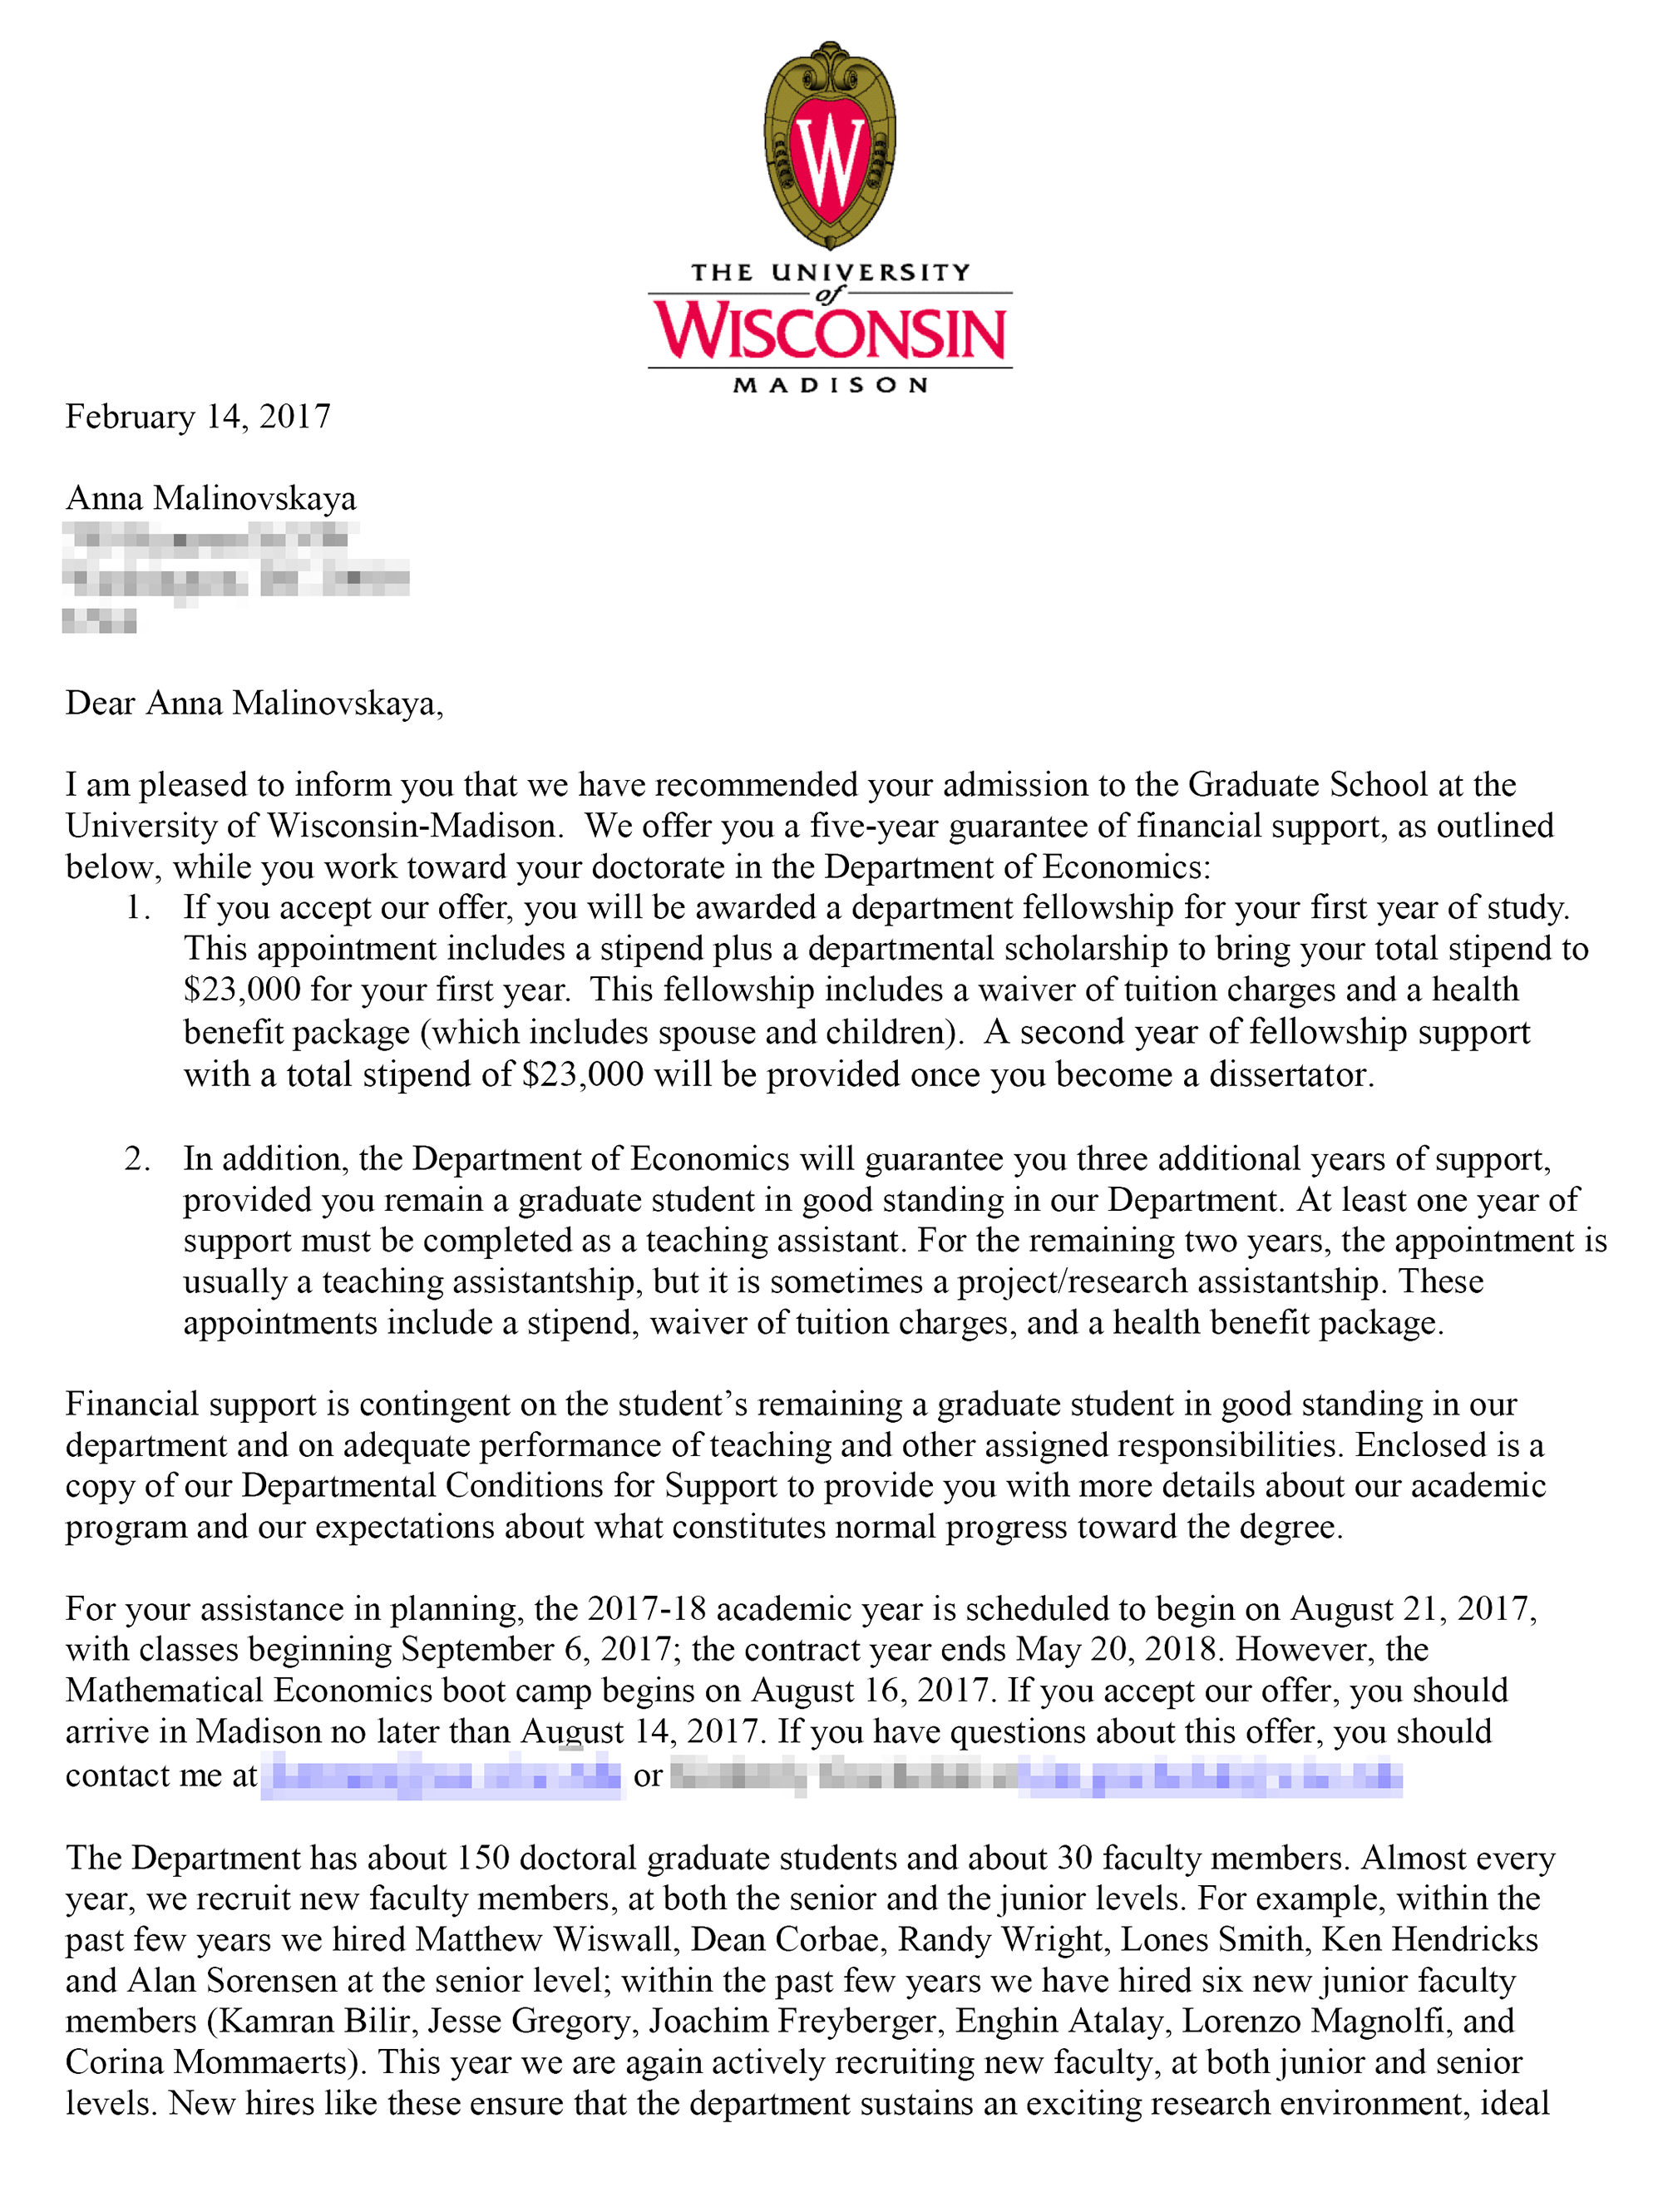 Это письмо о зачислении в Висконсинский университет